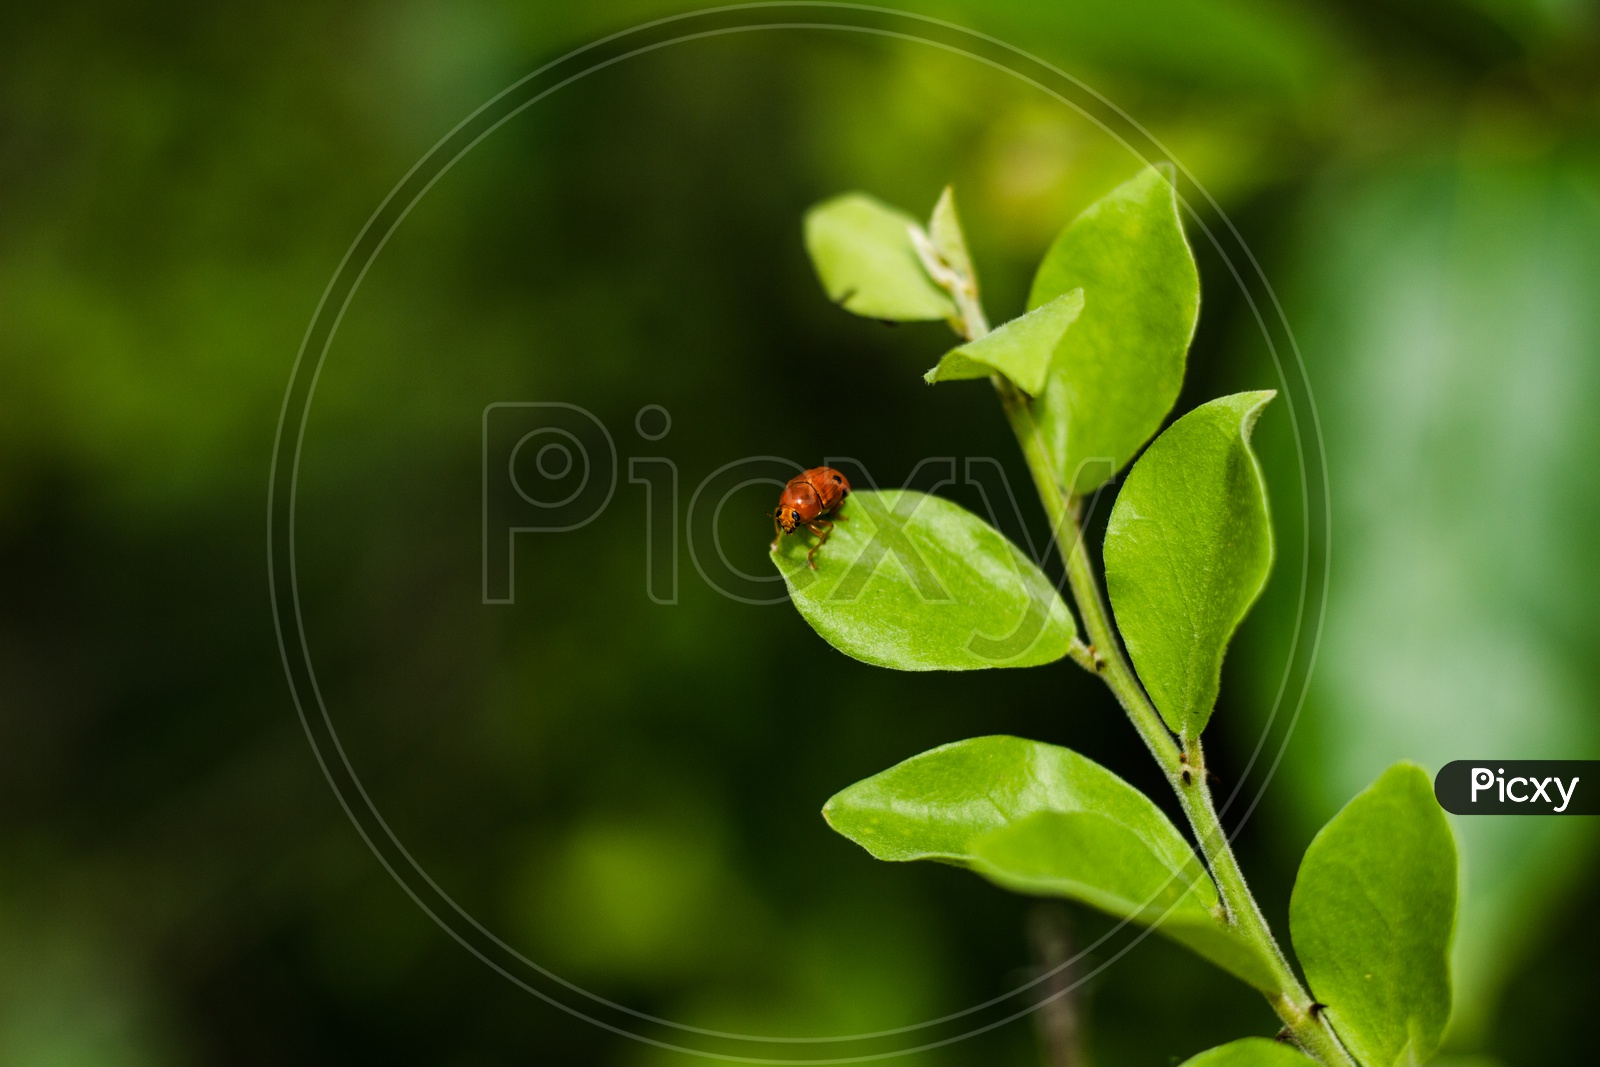 A tree beetle sitting on a leaf